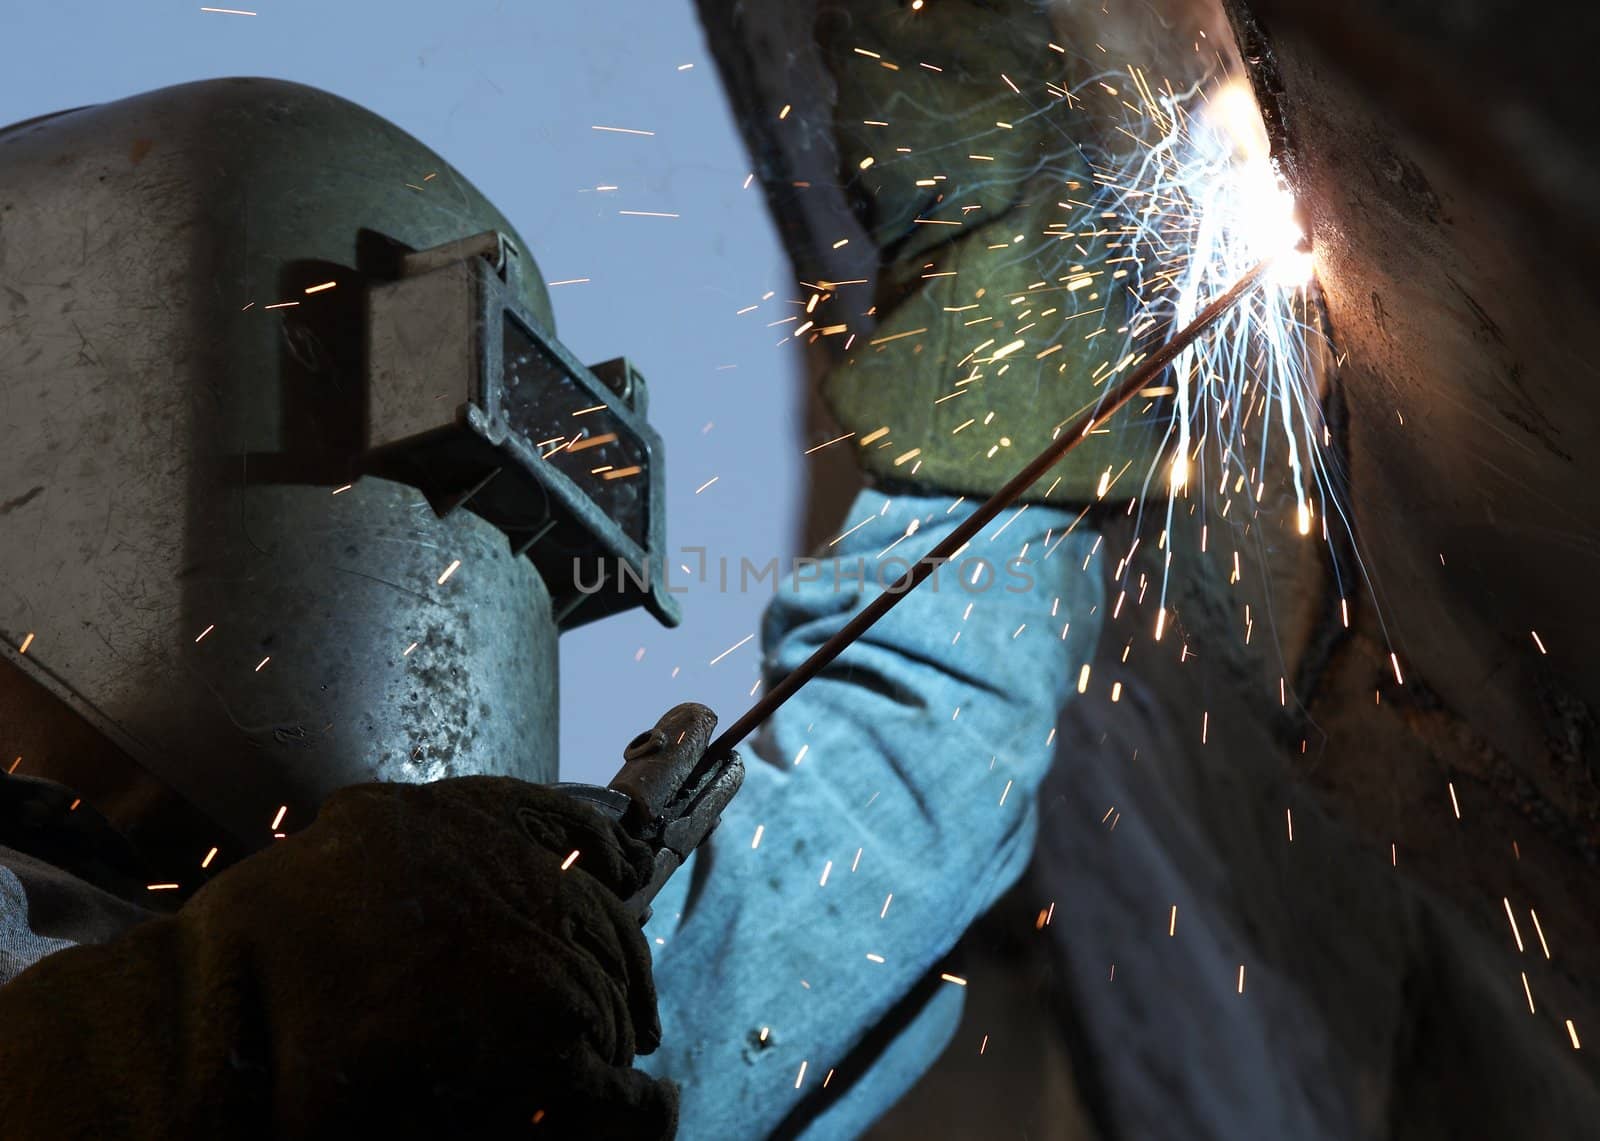 a arc welder busy at work